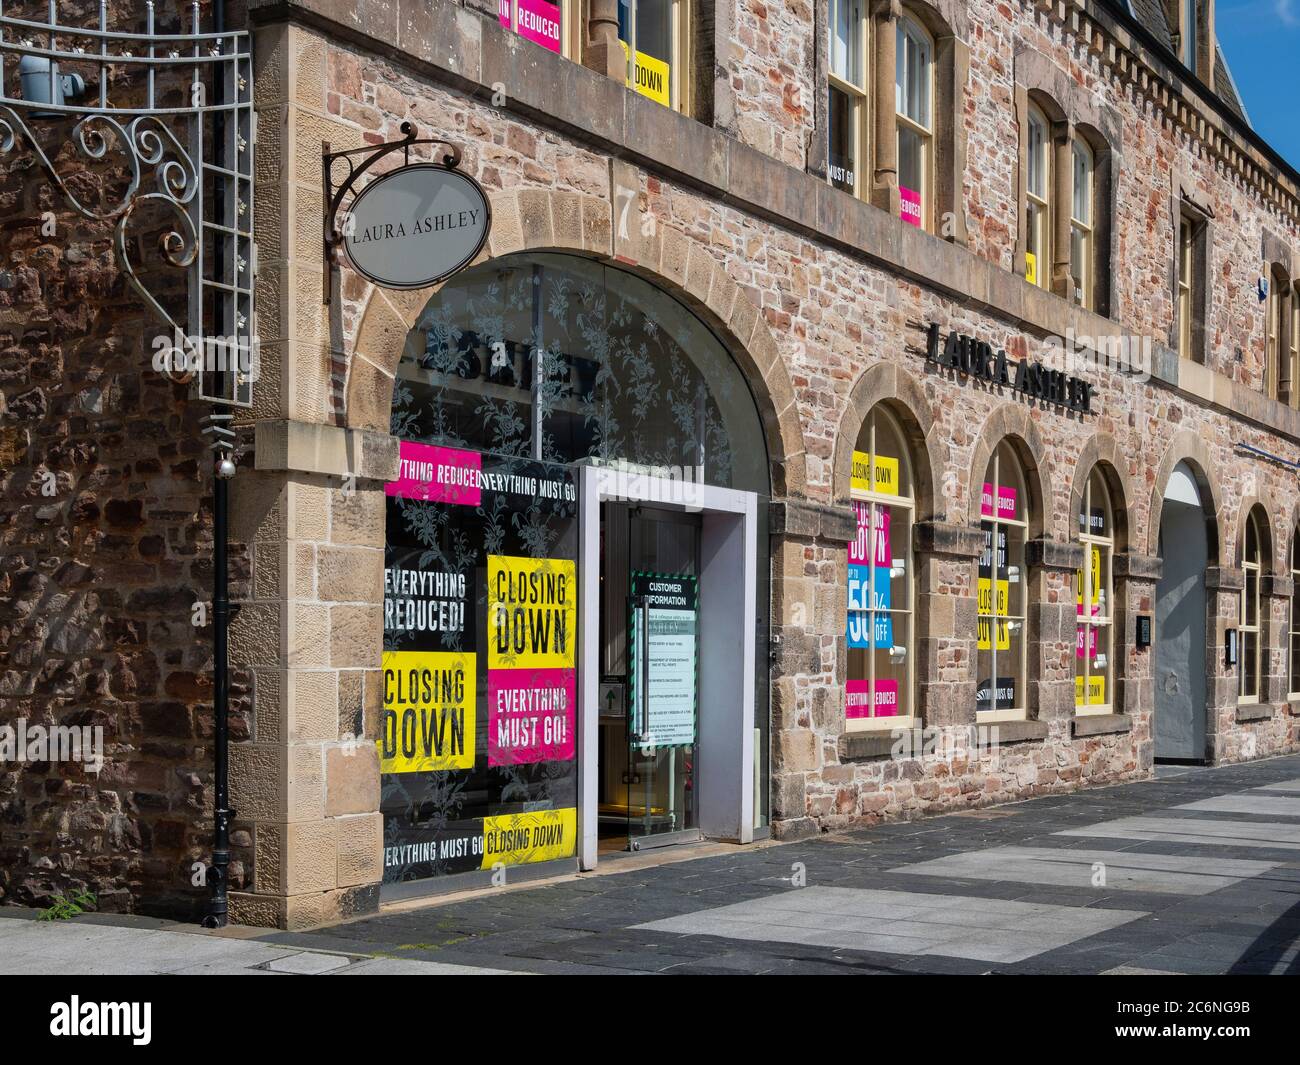 La vente de la boutique Laura Ashley est fermée, Inverness, Écosse Banque D'Images